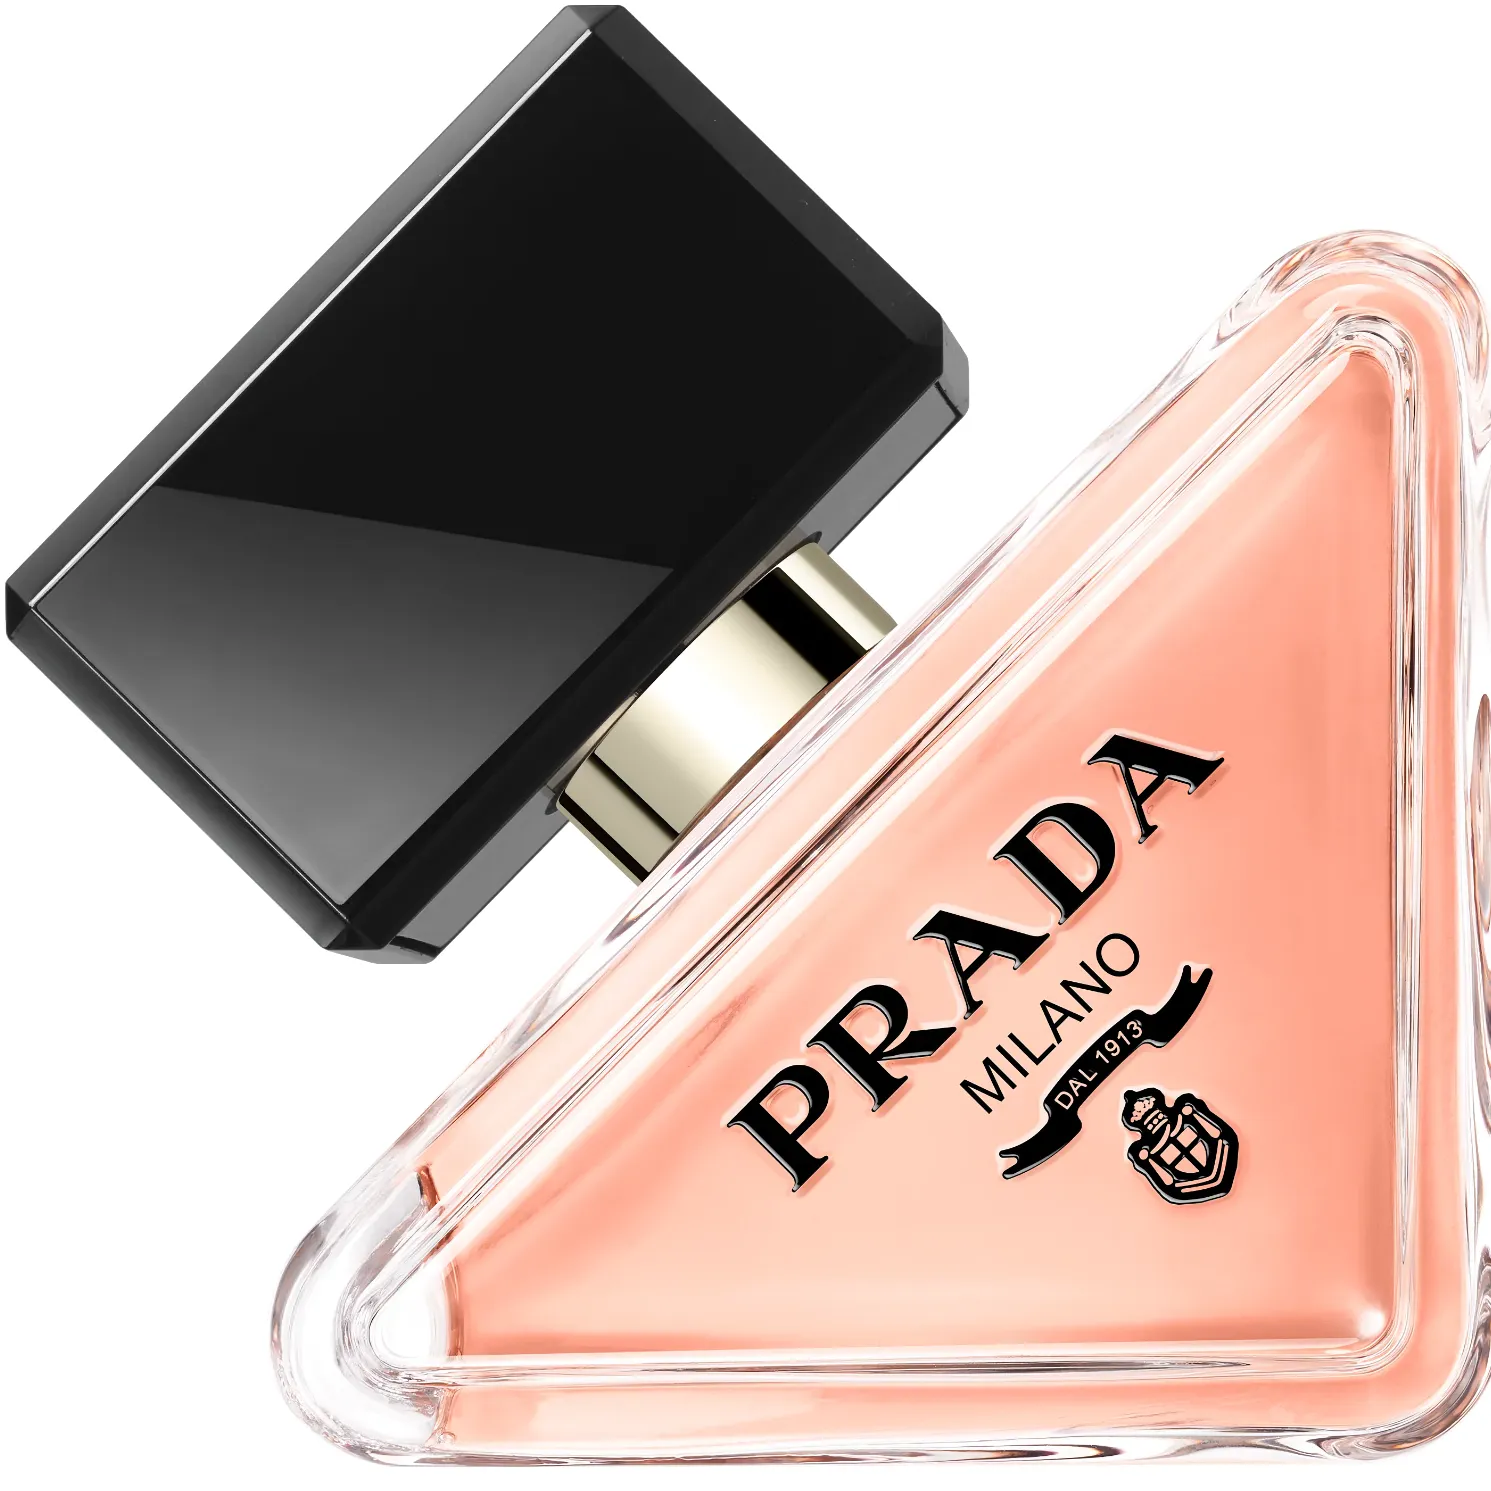 Free Prada Paradoxe Eau De Parfum